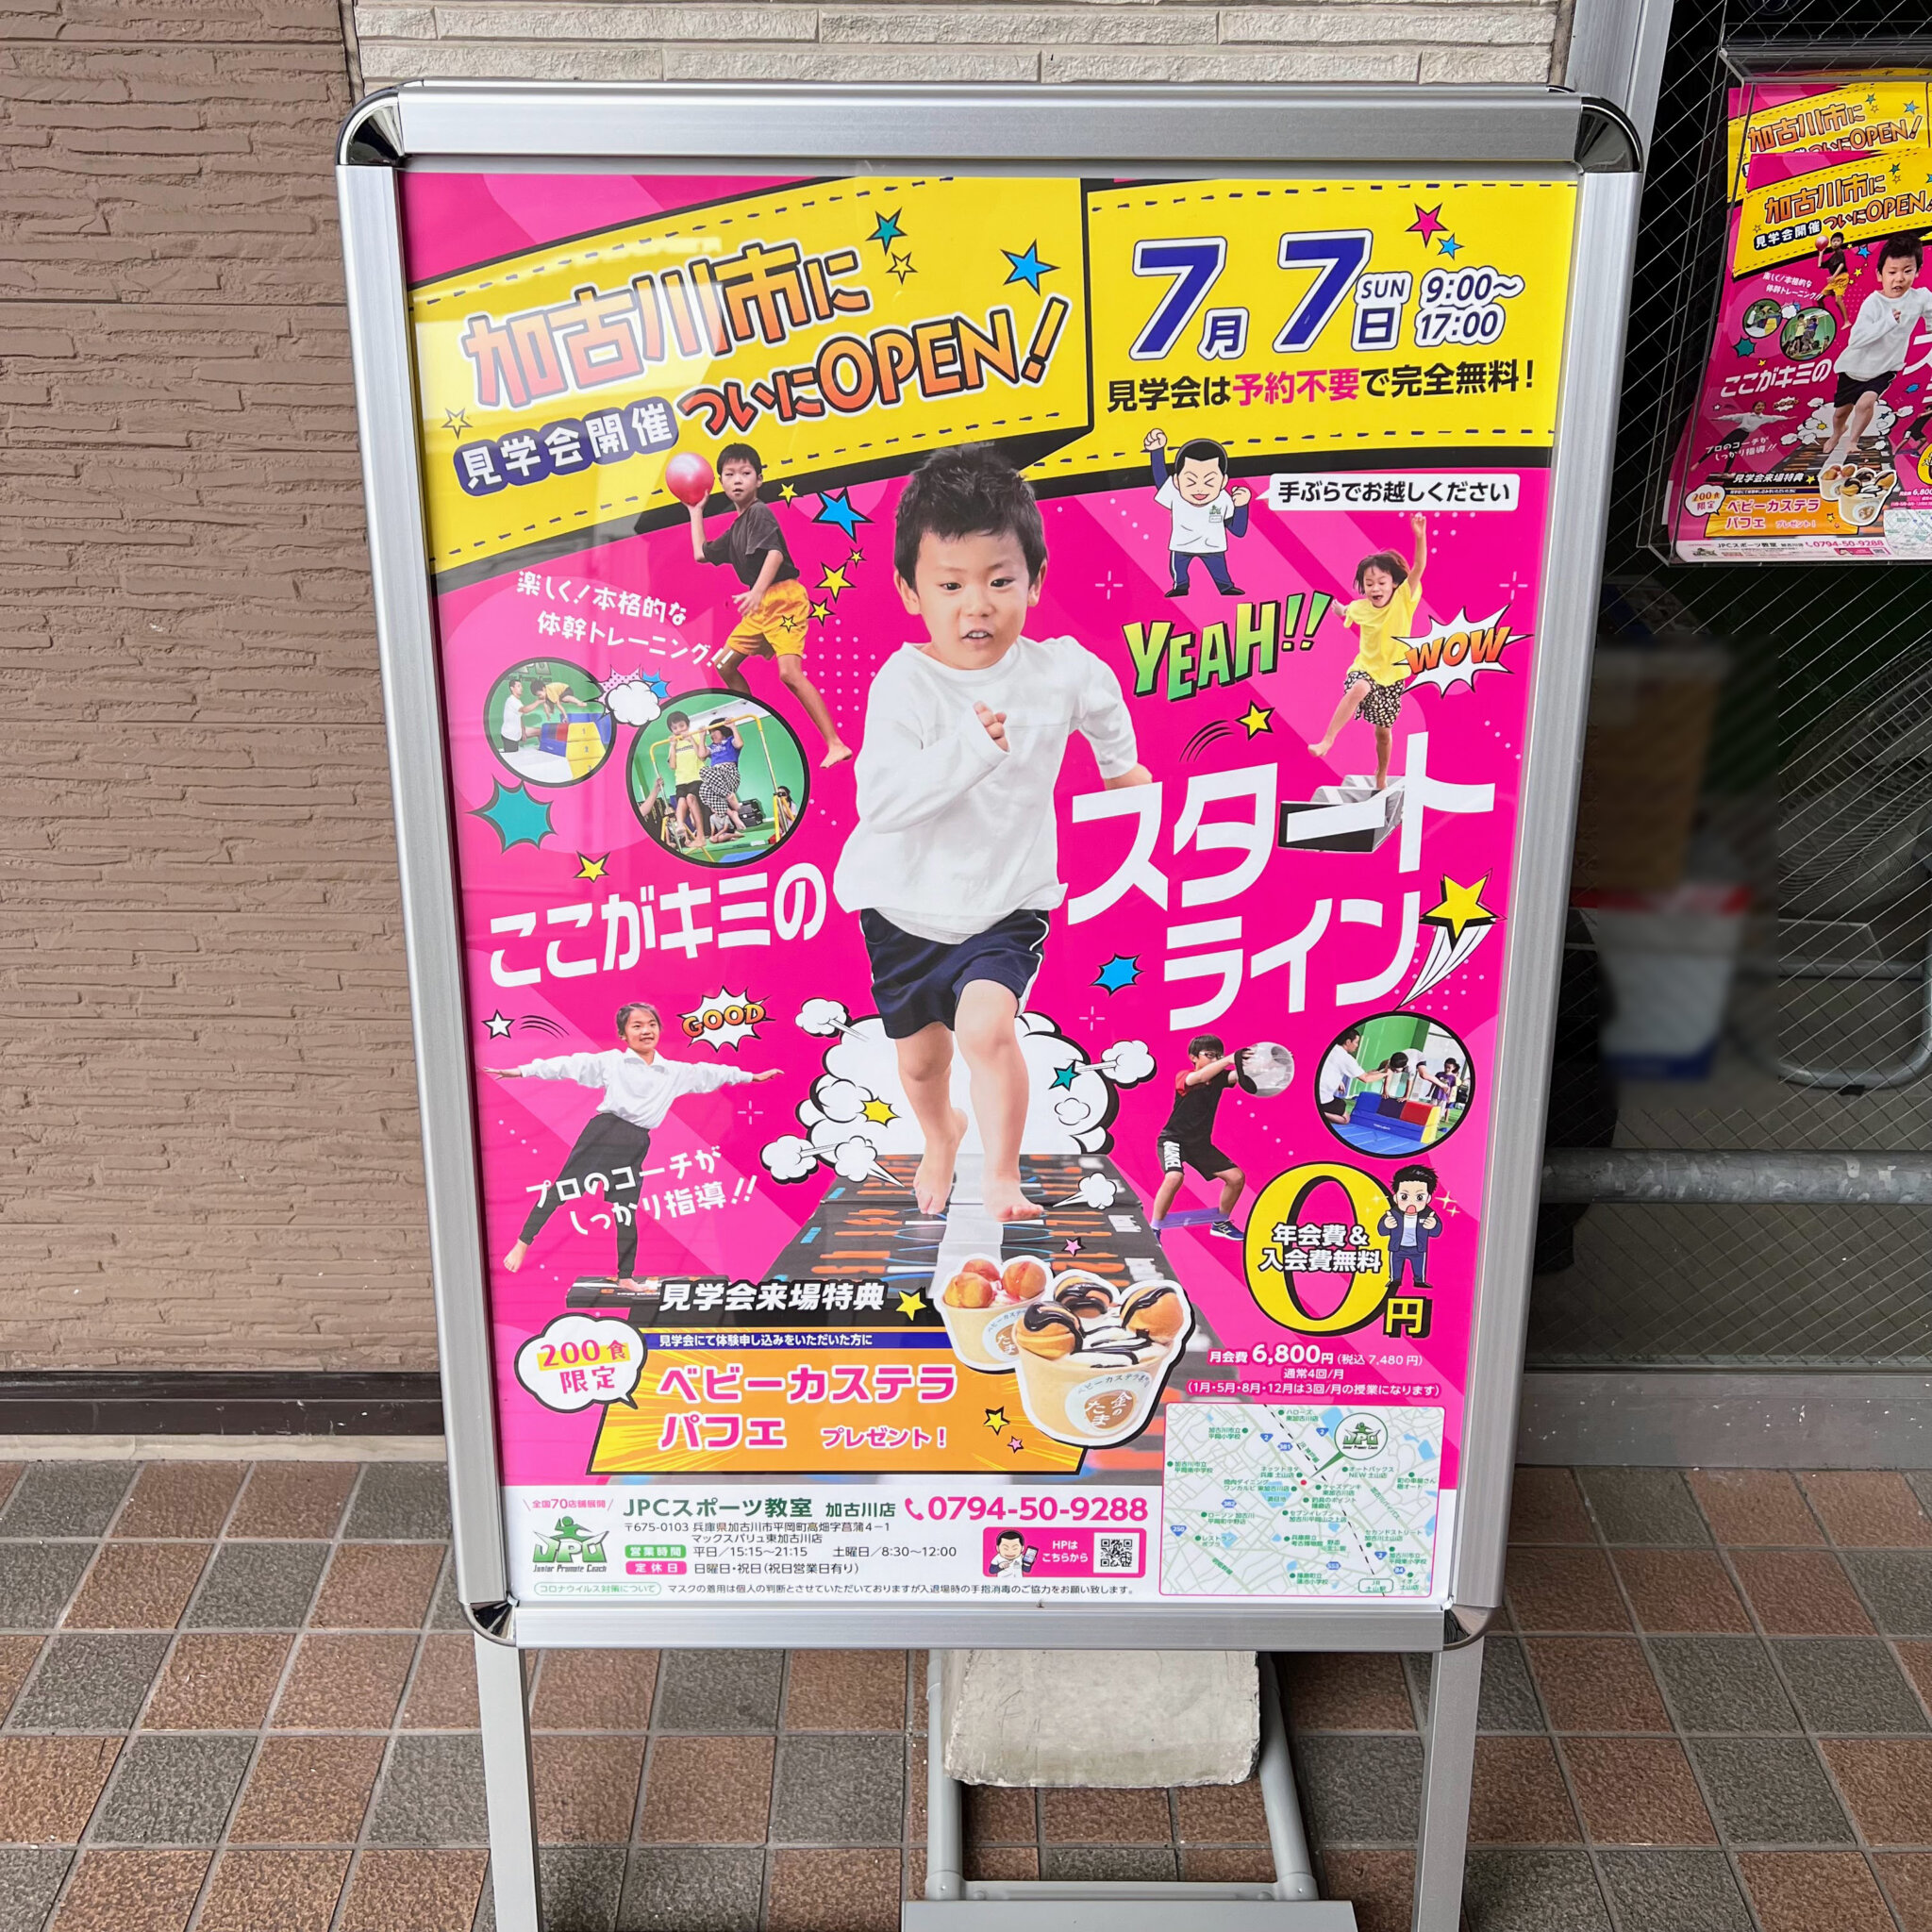 JPCスポーツ教室加古川店のオープンと見学会の告知ポスター